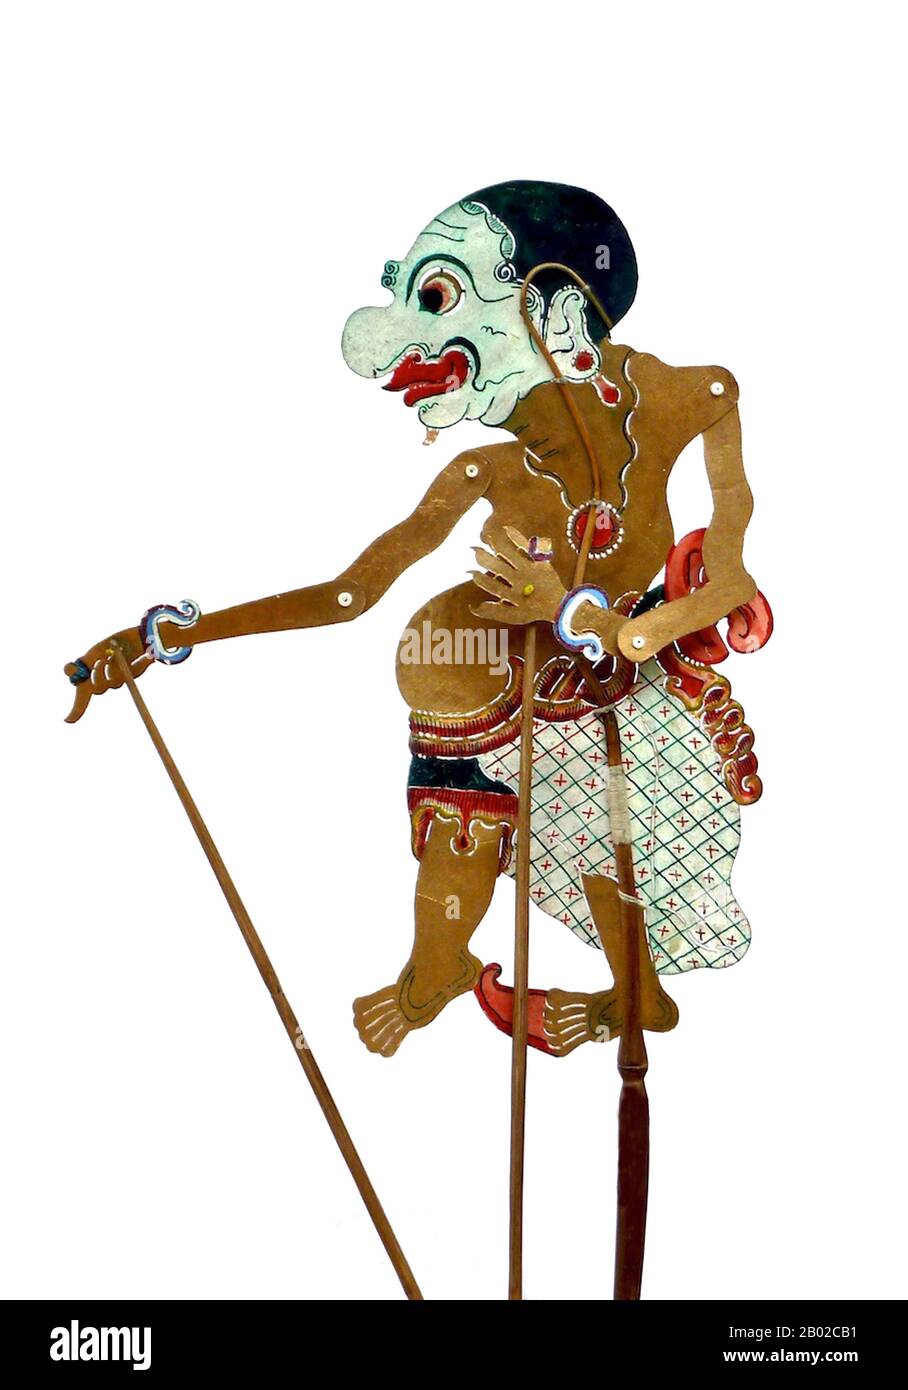 Dans le wayang javanais (marionnettes d'ombre), le panakawan ou le panakavan (phanakavhan) sont les serviteurs de clown du héros. Il y en a quatre – Semar (également connu sous le nom de Ki Lurah Semar), Petruk, Gareng et Bagong. Semar est la personnification d'une divinité, parfois dit à être le dhanyang ou l'esprit gardien de l'île de Java. Dans la mythologie javanaise, les déités ne peuvent se manifester que comme des êtres humains laides ou non prépossédant, et Semar est toujours dépeint comme étant court et gras avec un nez pug et une hernie bancale. Ses trois compagnons sont ses fils adoptés, donnés à Semar comme votaires par leur p Banque D'Images